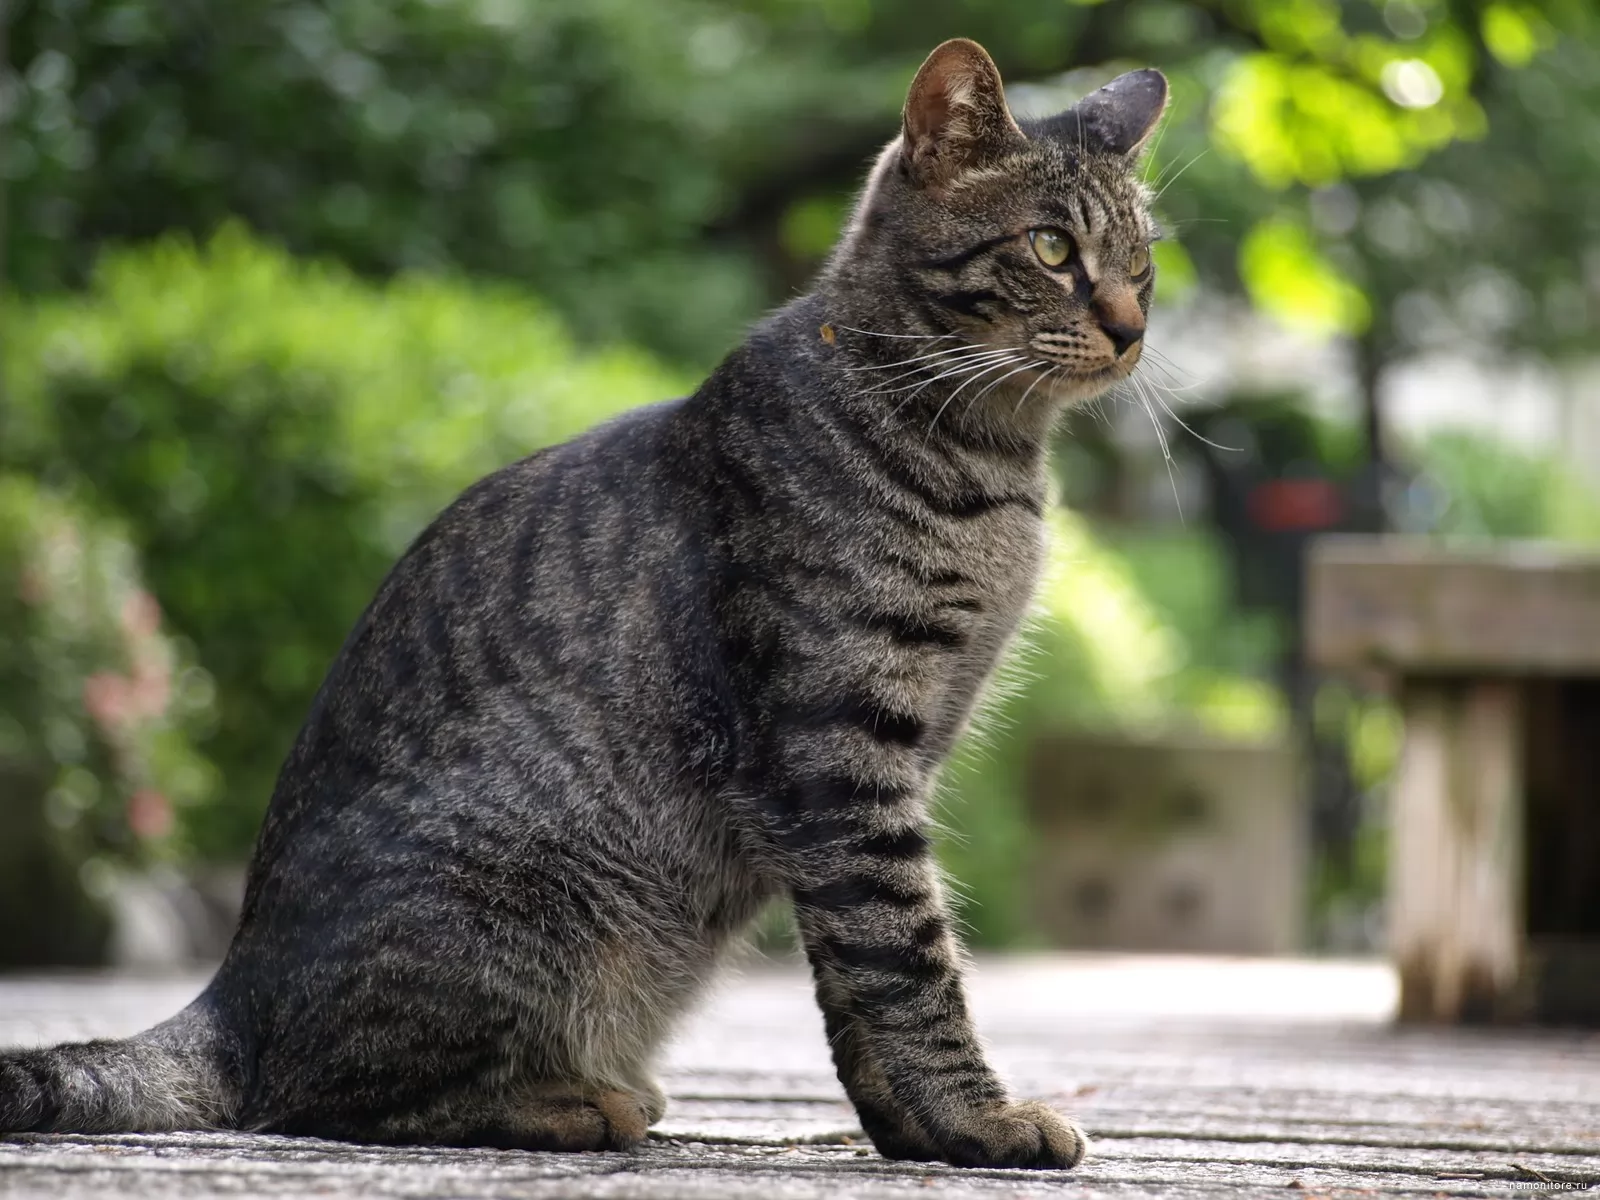 Animals posting. Европейская короткошерстная кошка серая. Кошка европейская короткошерстная серая полосатая. Европейская голубая короткошерстная кошка. Полосатый кот беспородный.